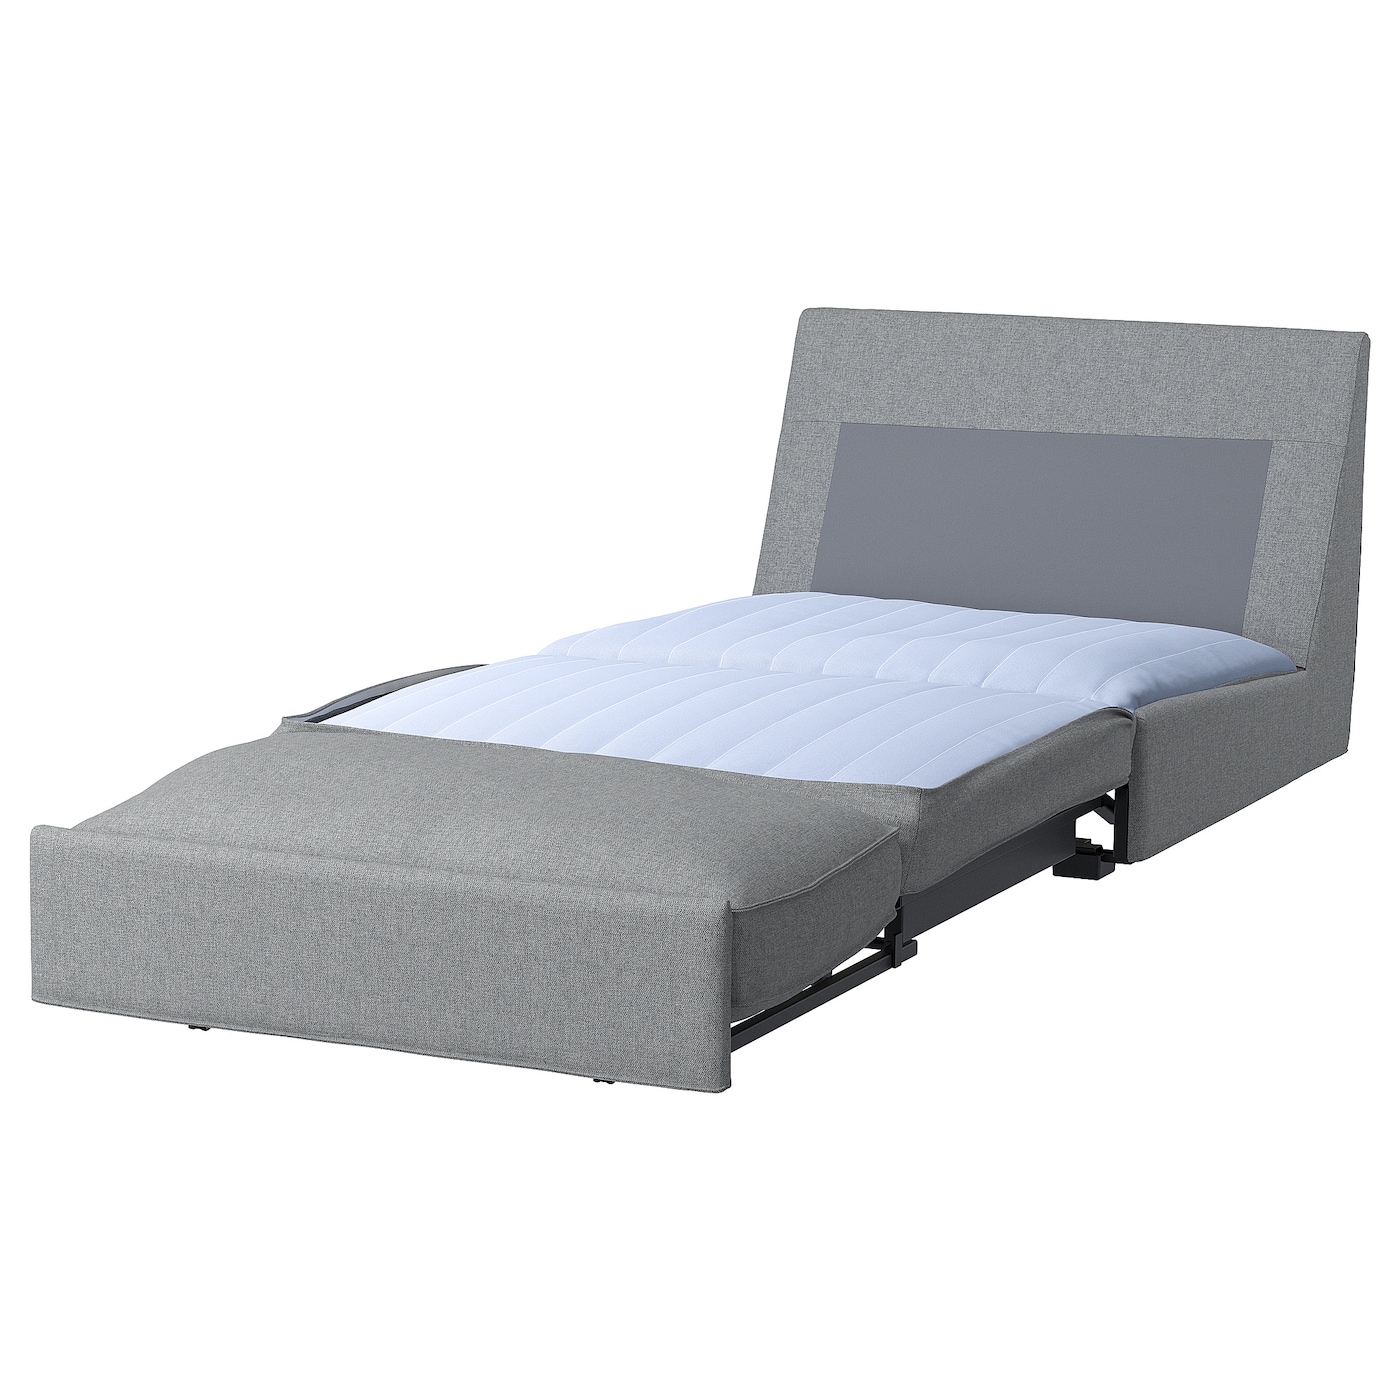 КИВИК 1-местный диван-кровать, Тибблби бежевый/серый KIVIK IKEA кровать диван ру весмар 180 velvet terra